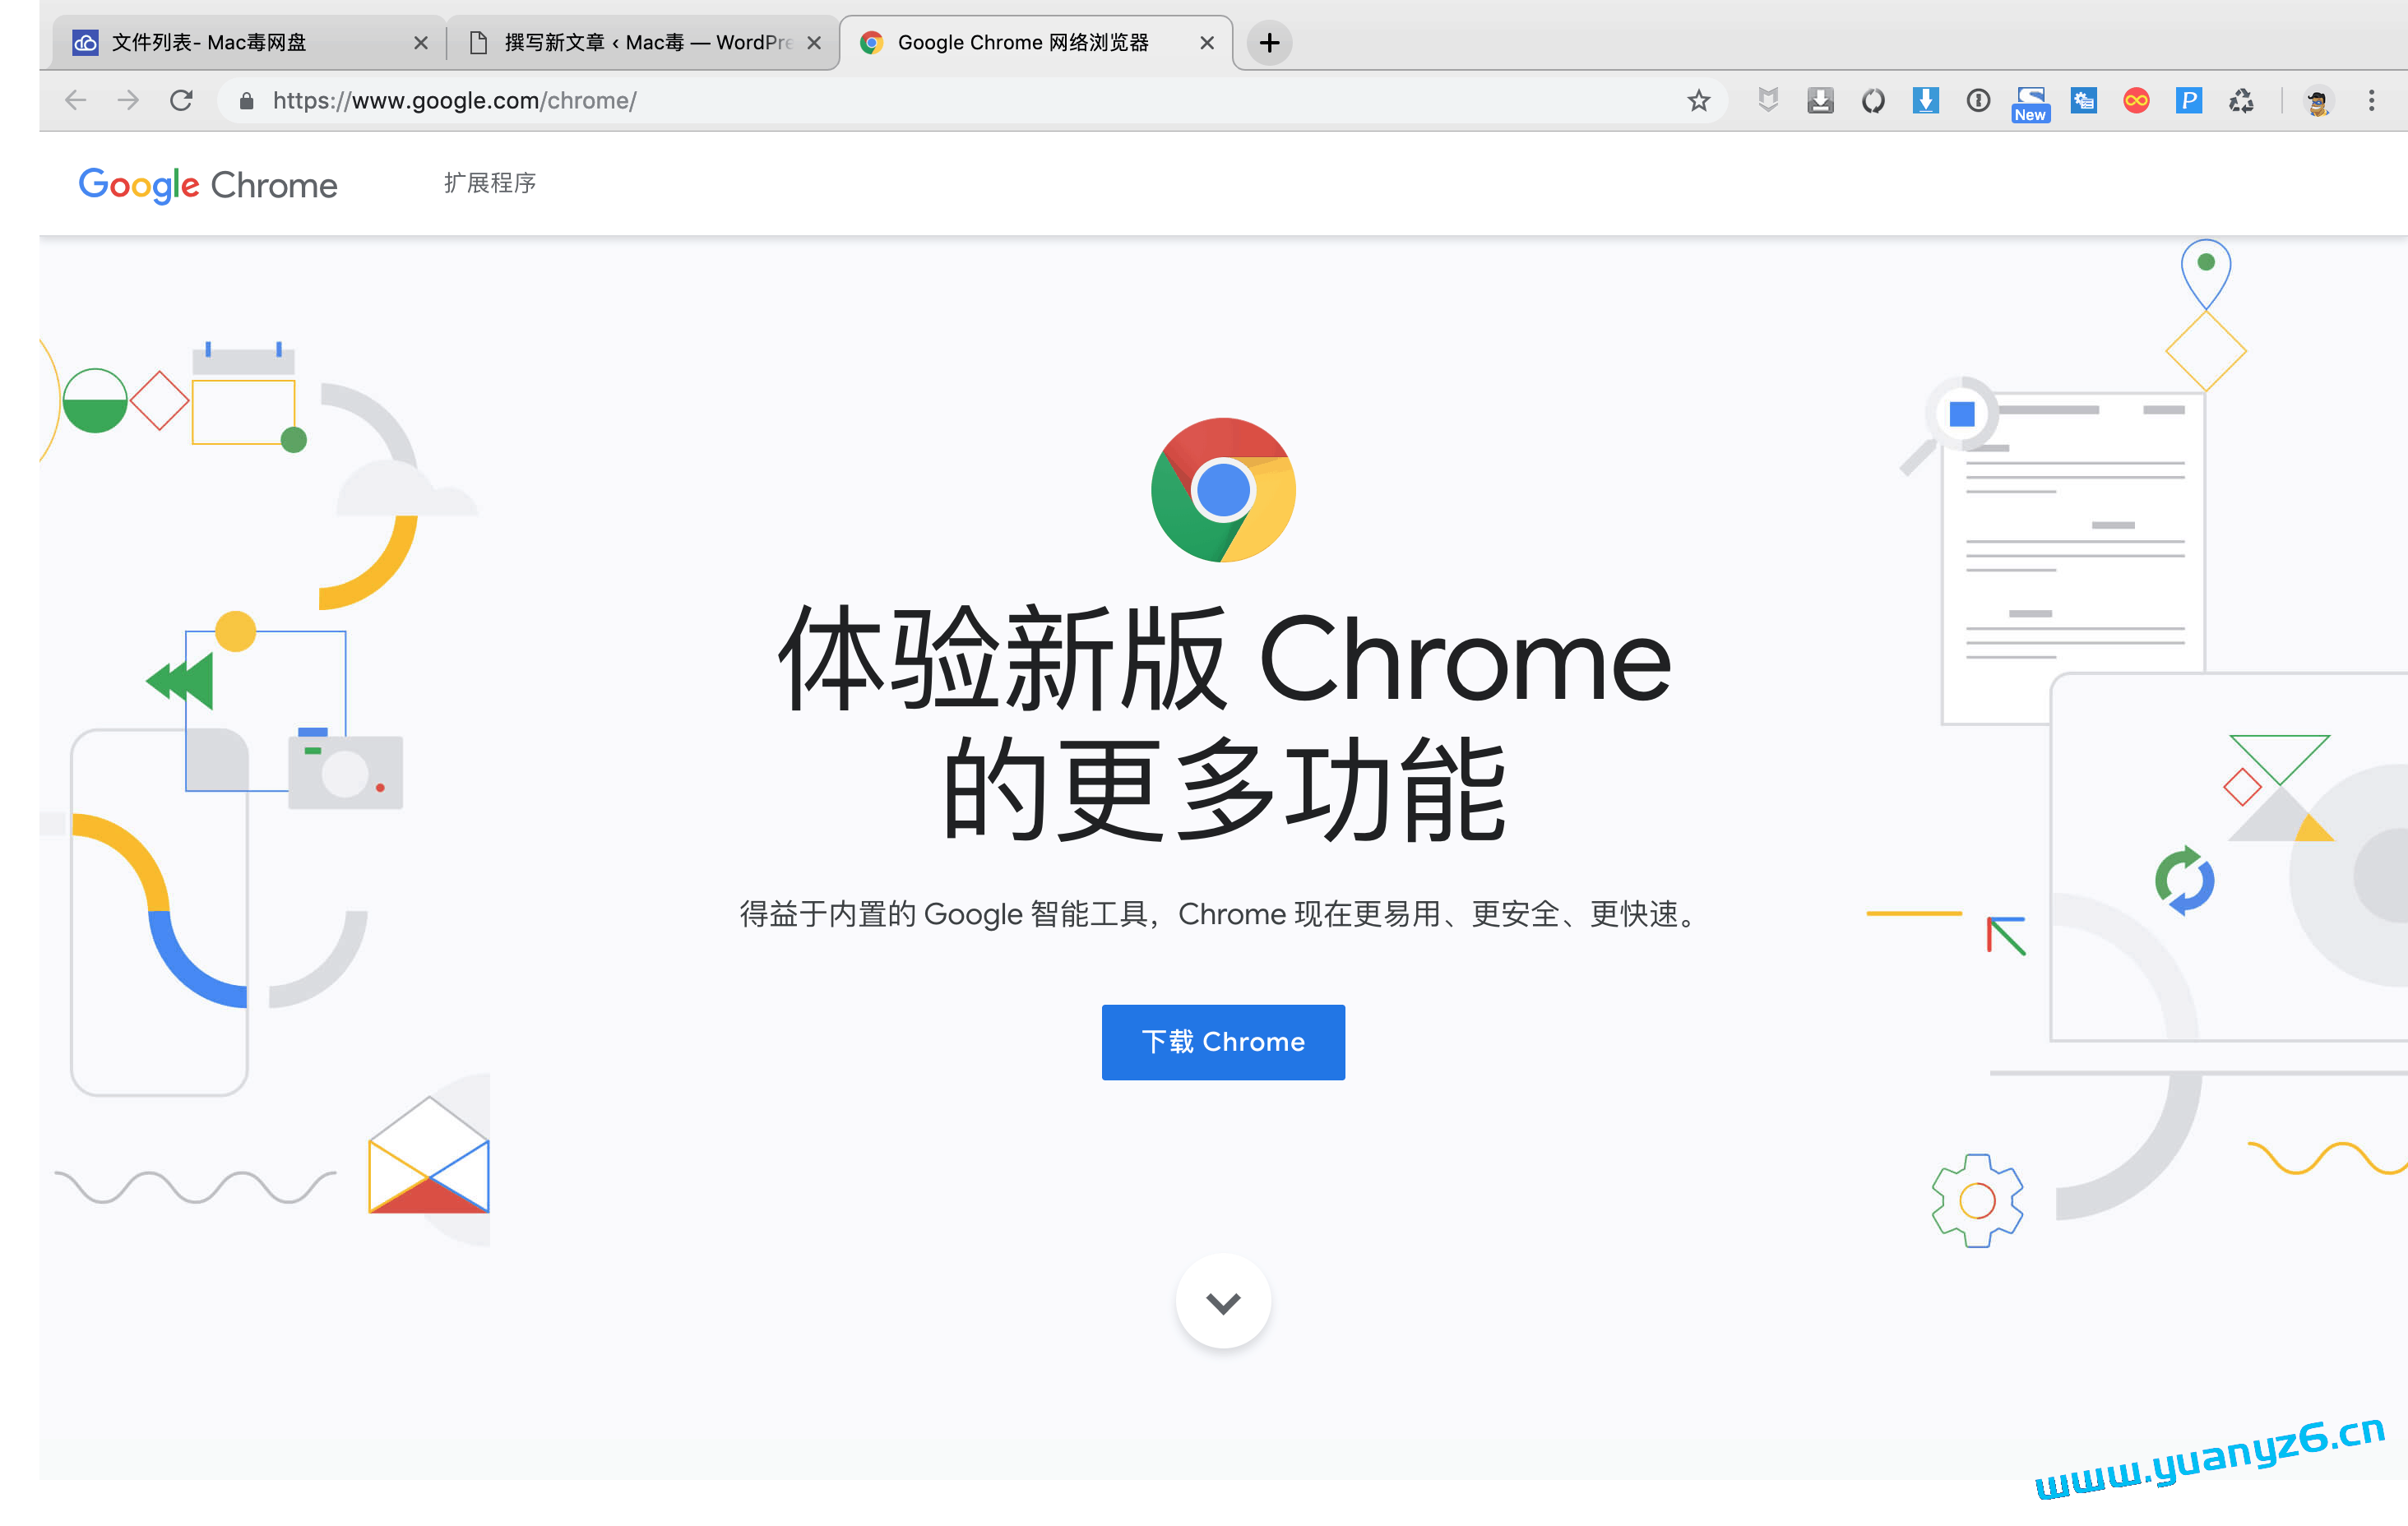 Google Chrome for Mac v105 谷歌浏览器 苹果电脑